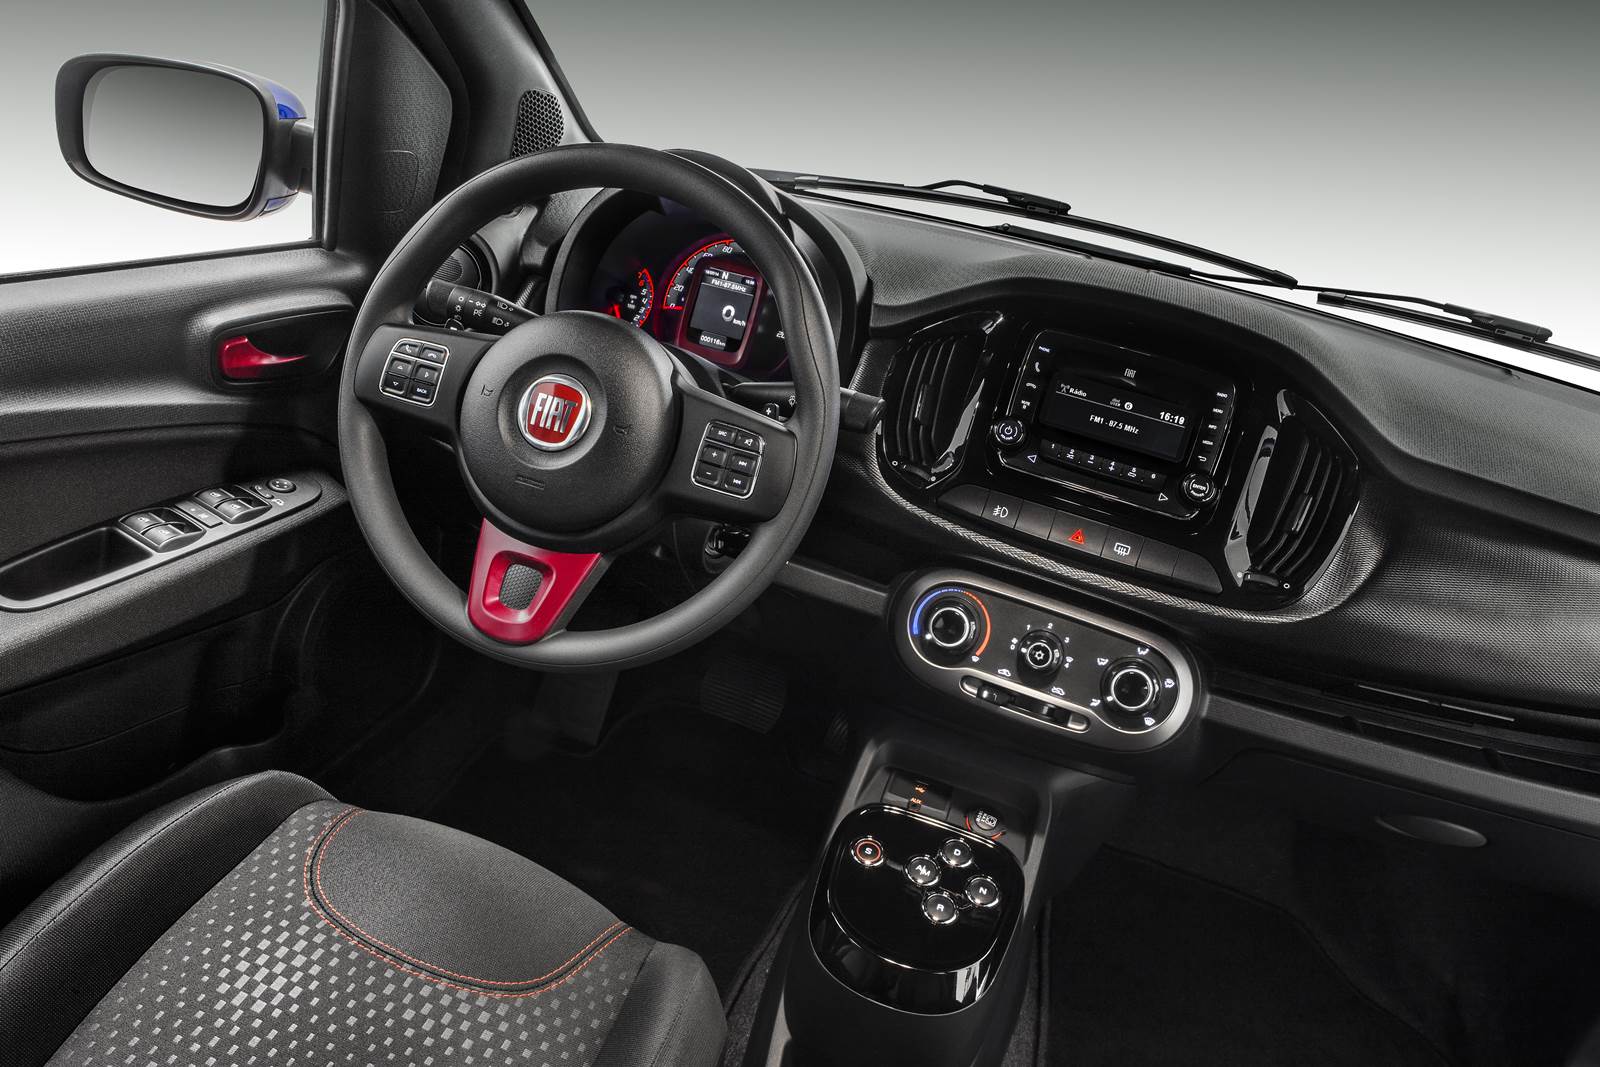 Novo Fiat Uno 2015: vídeo mostra detalhes das versões